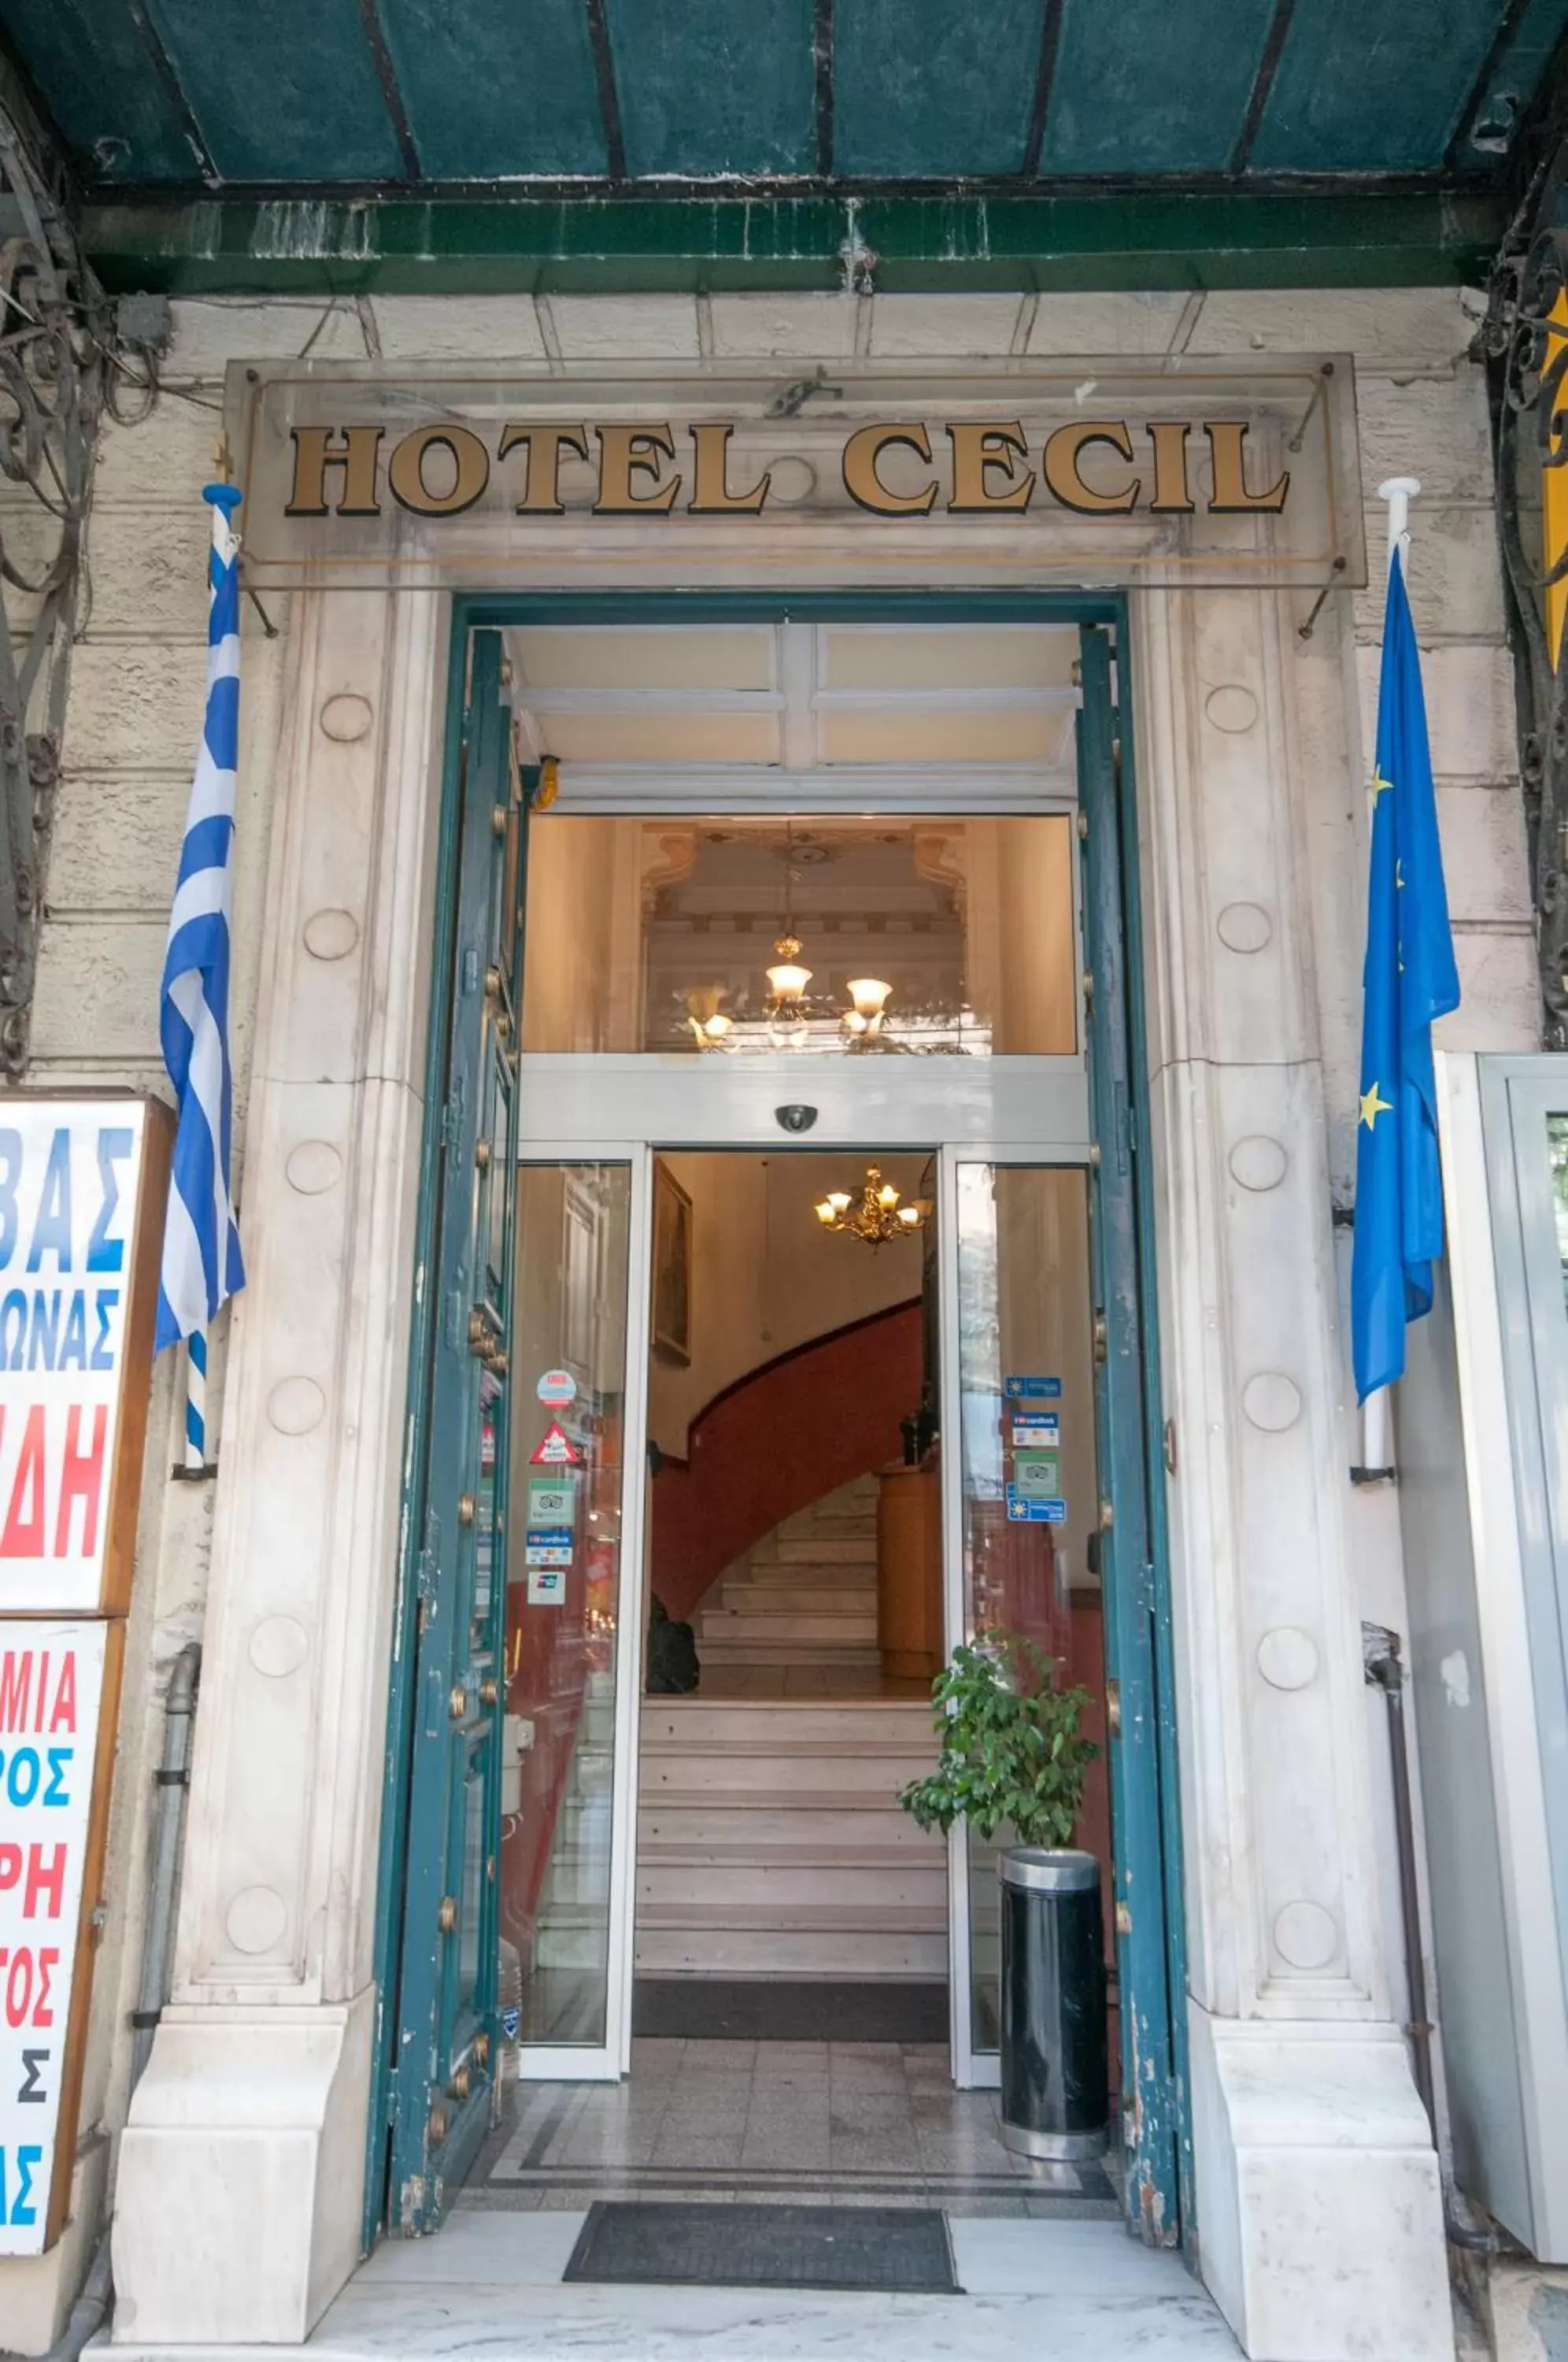 Facade/entrance in Cecil Hotel